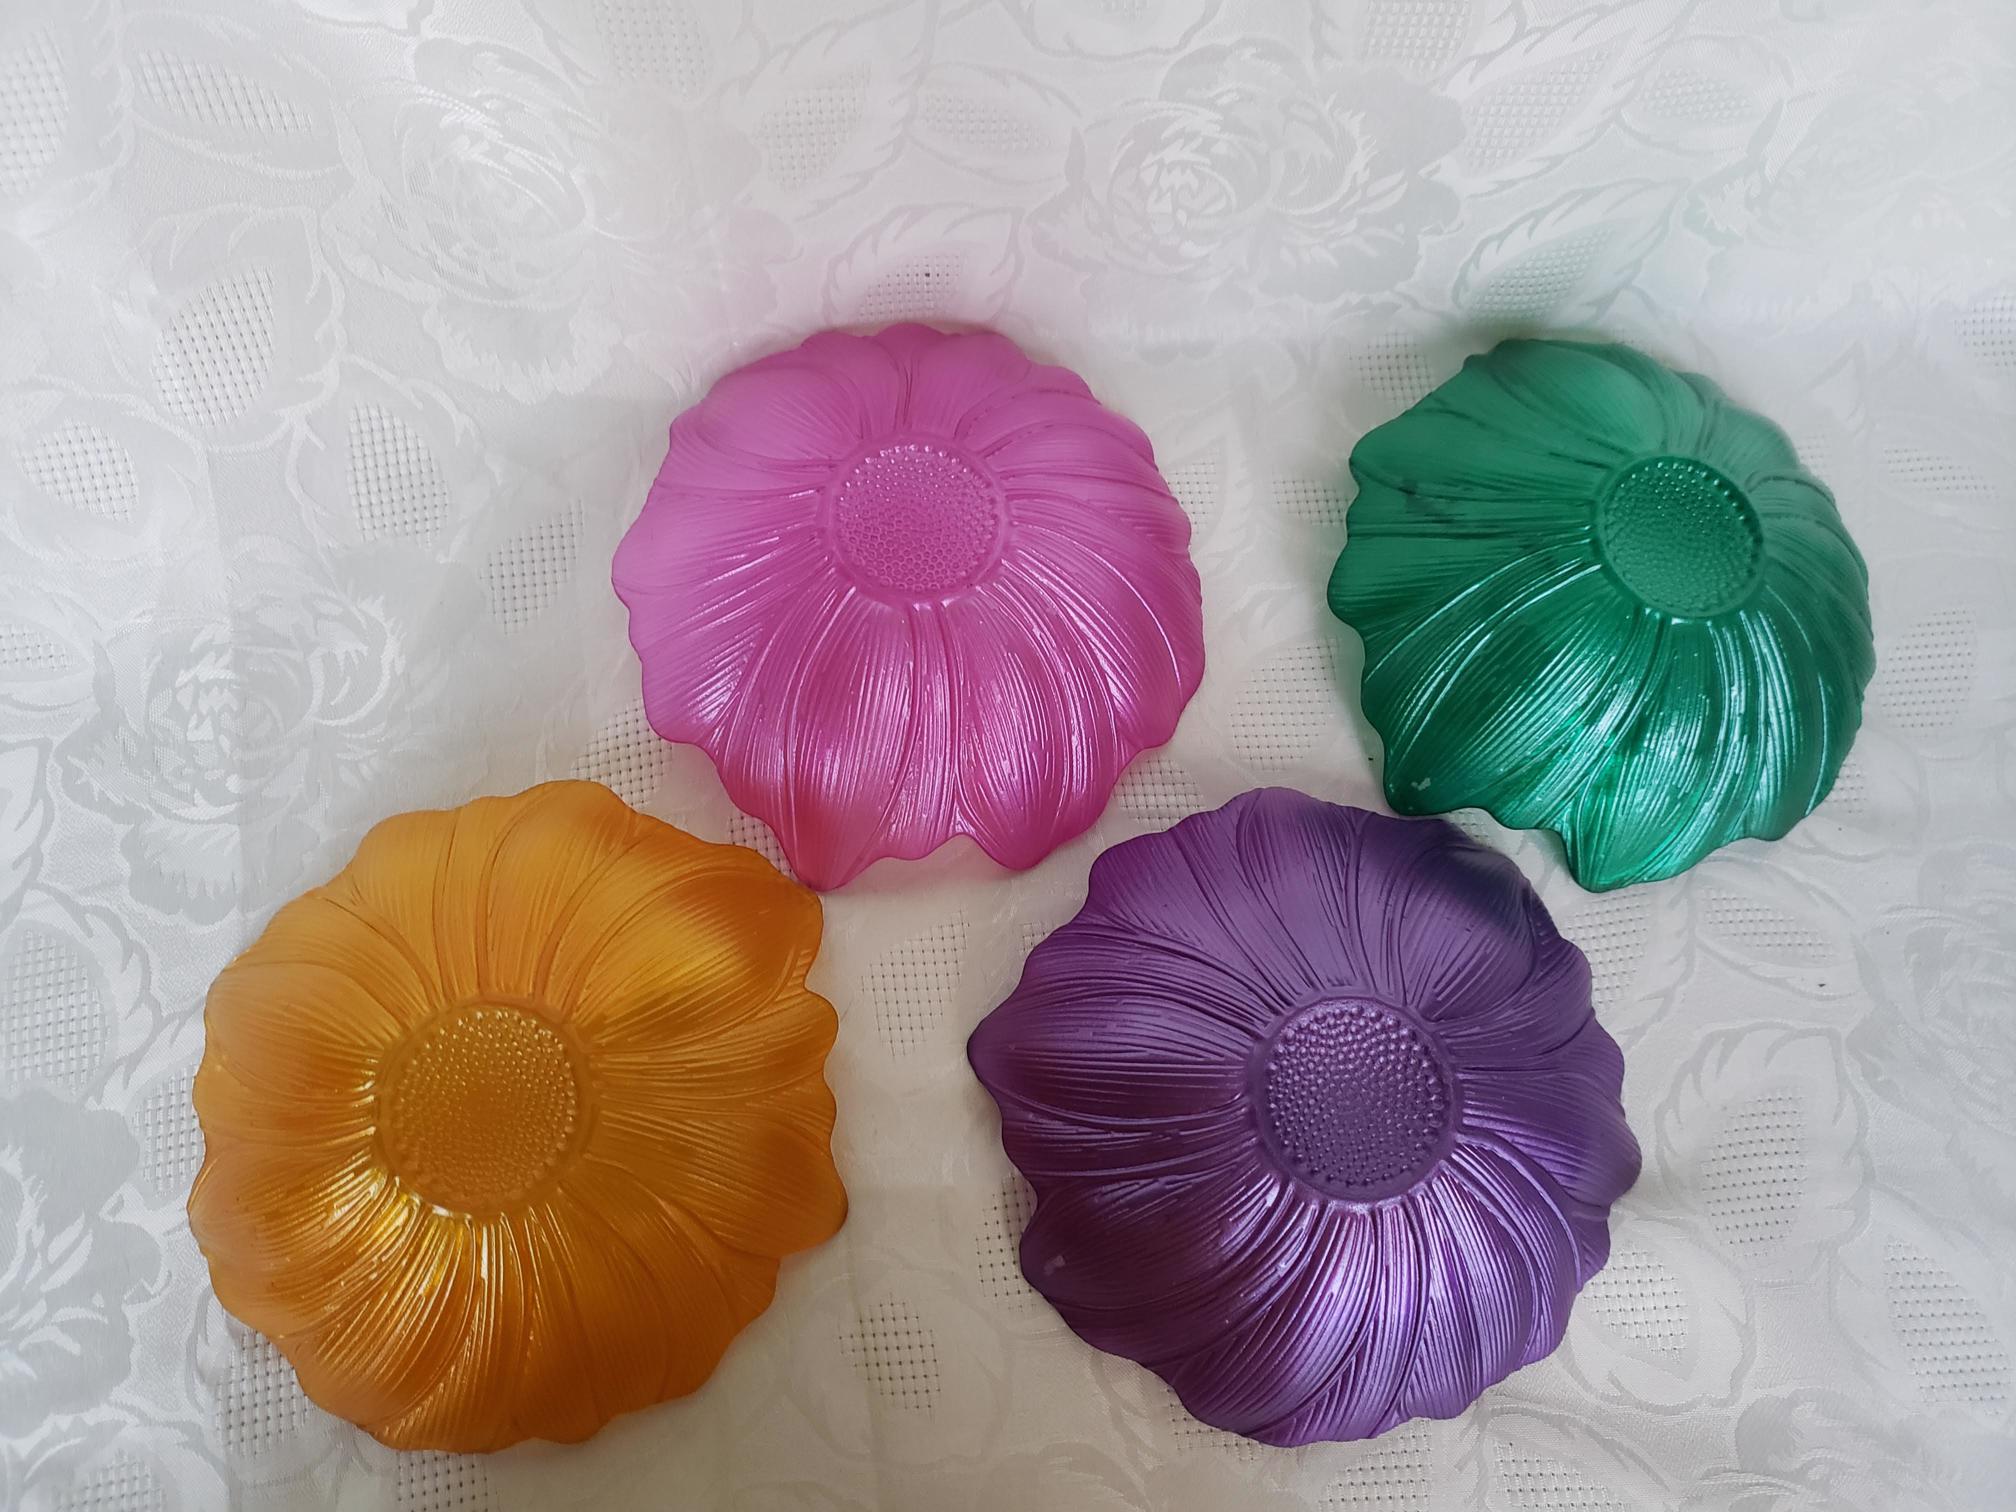 Details about   Set Of Four Pastel Color Glass Flower Shape Decorative Bowls 